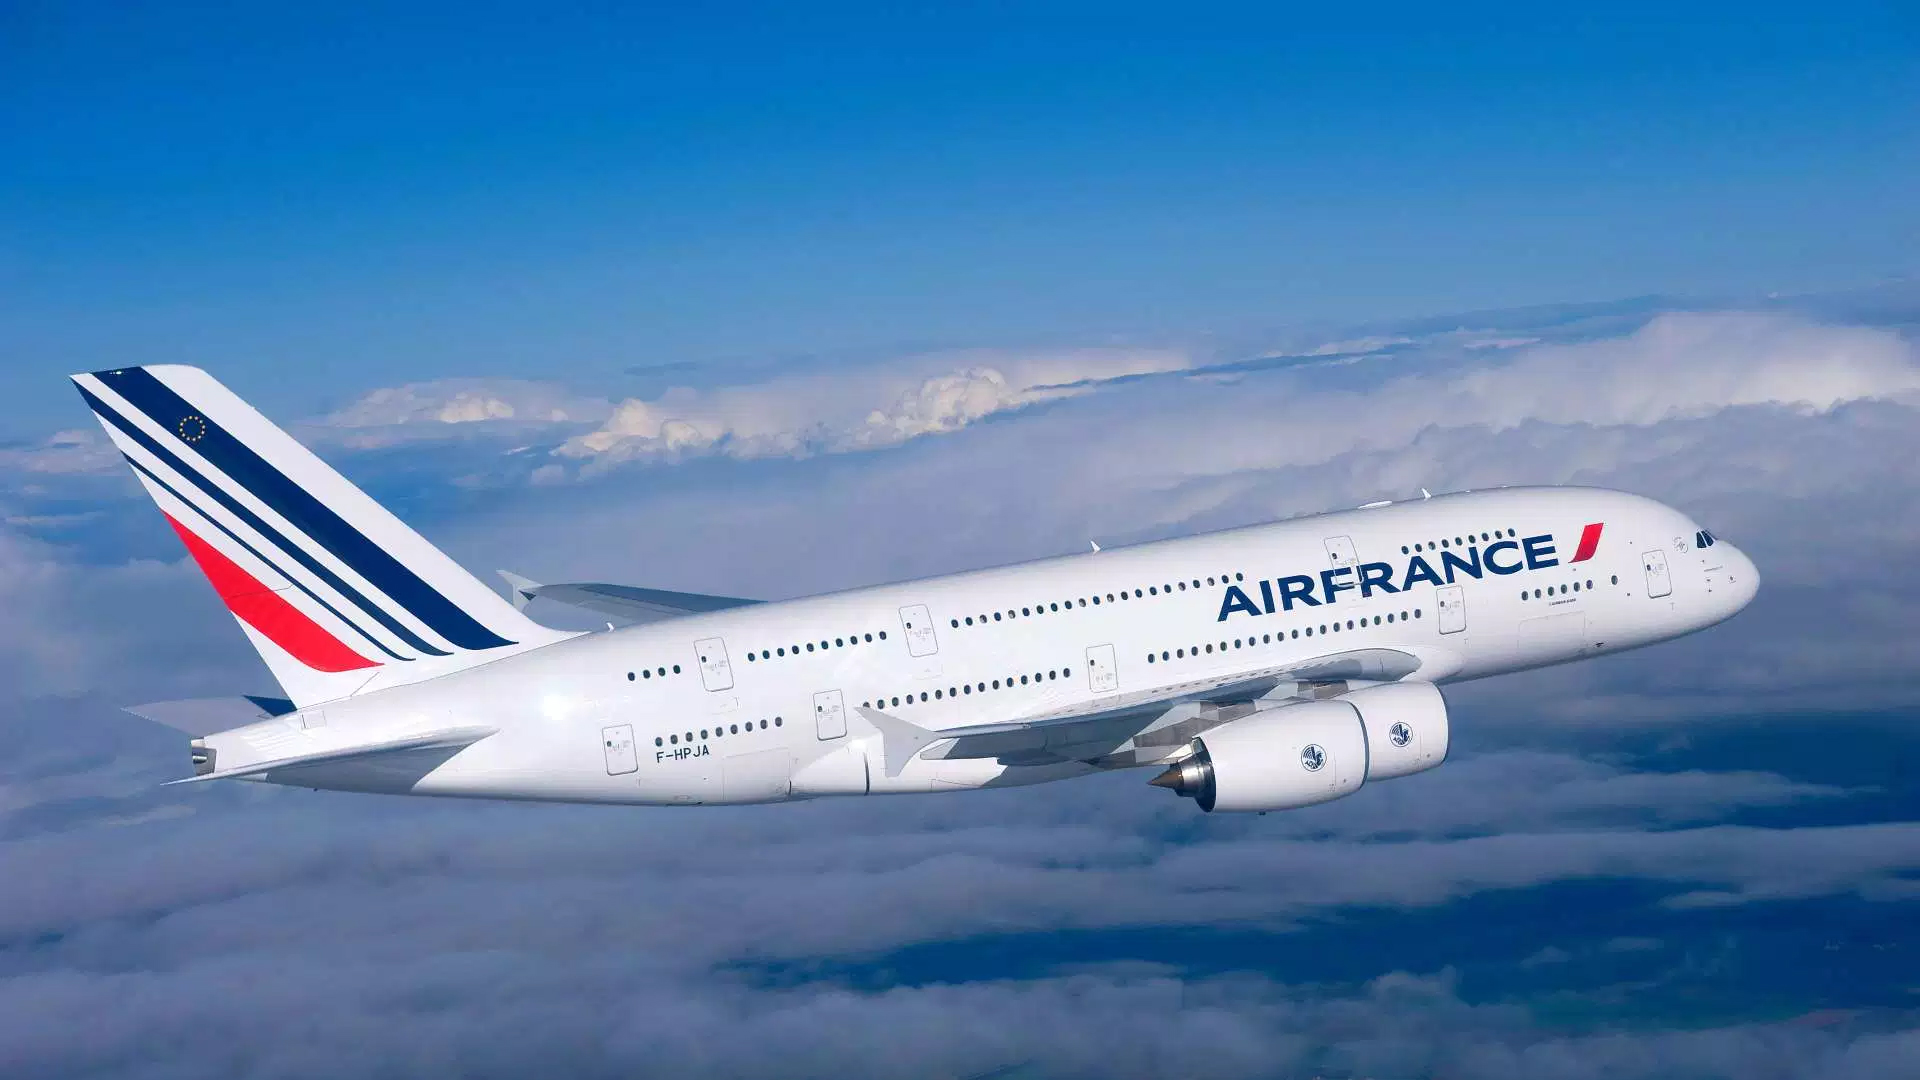 Air let. A220 Air France. A380 Air France. Airbus a380 Air France. Airbus a380 экипаж.